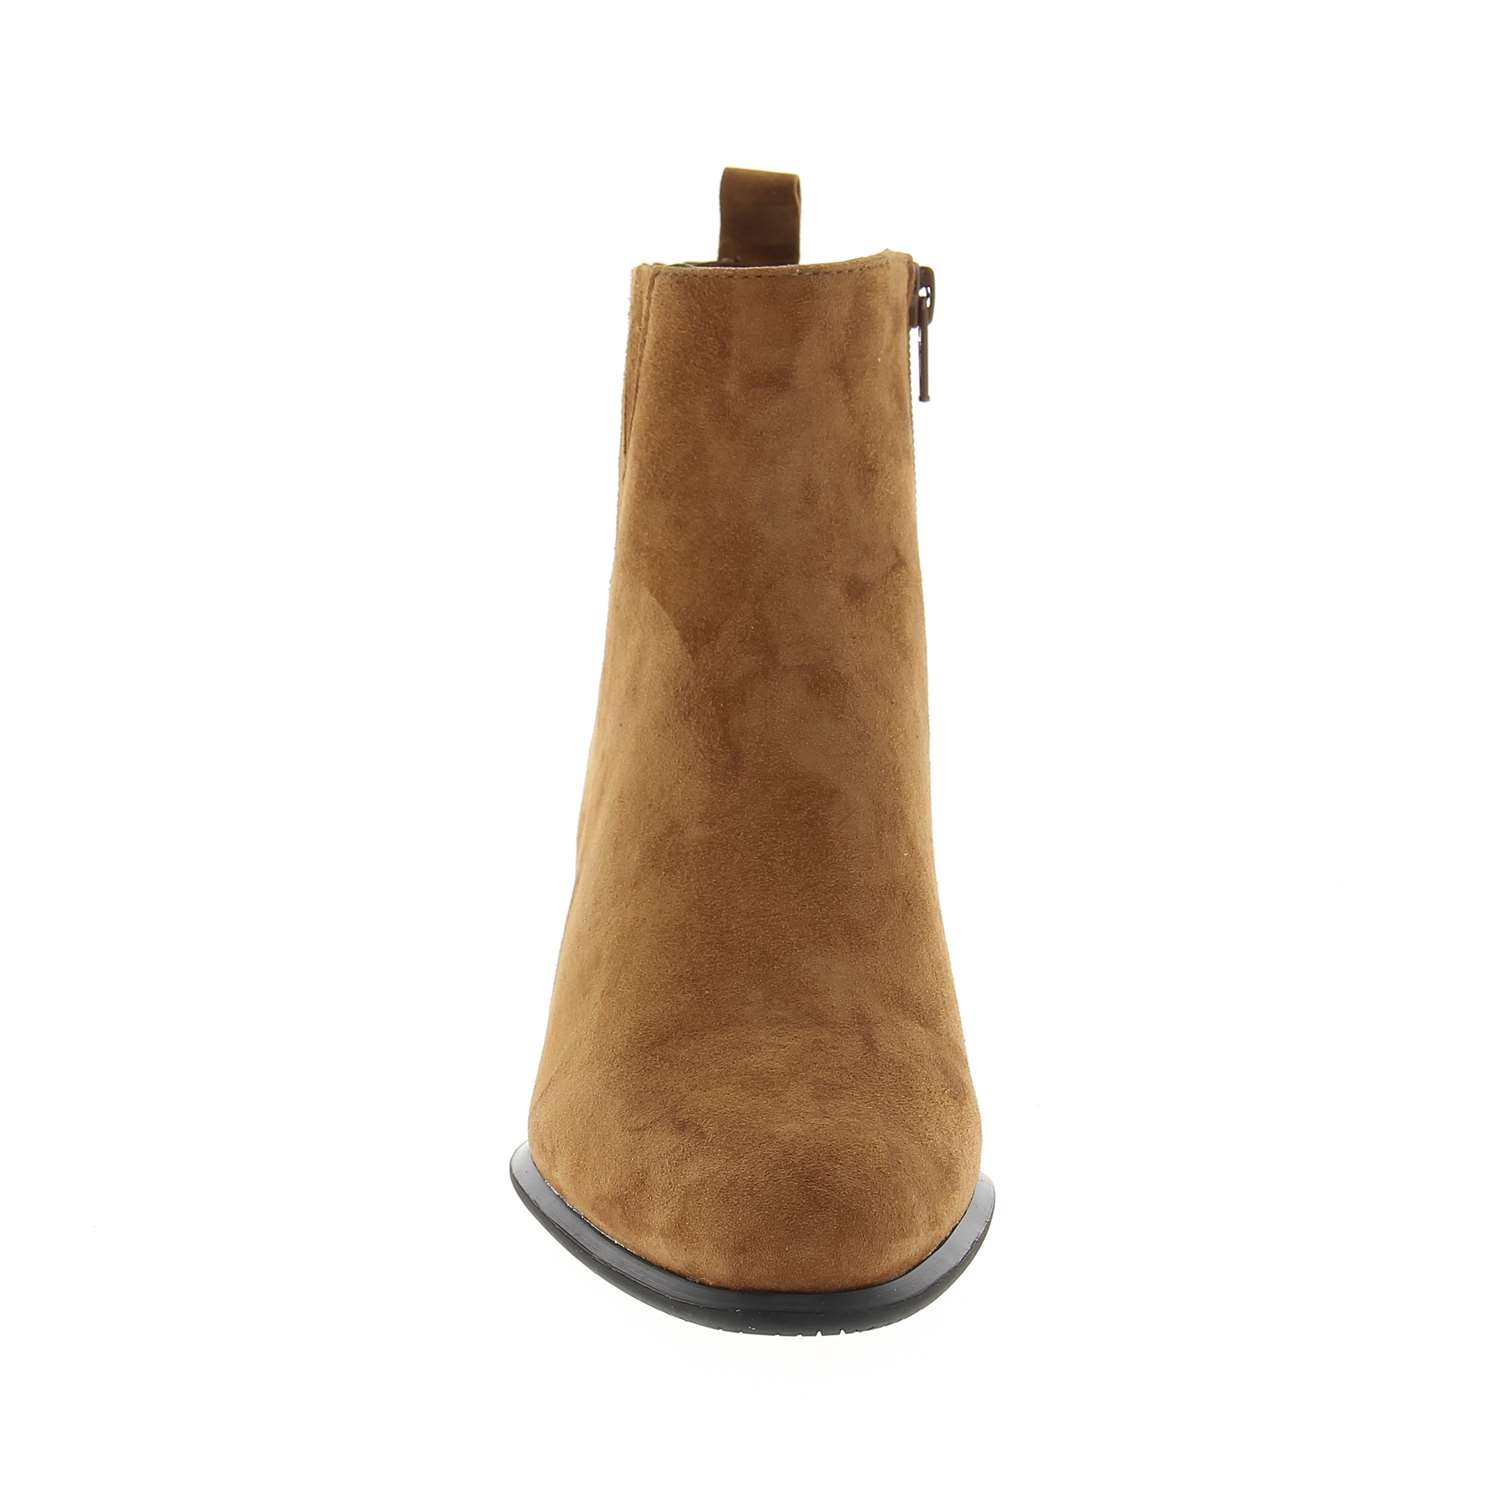 03 - FLAK - FUGITIVE - Boots et bottines - Croûte de cuir